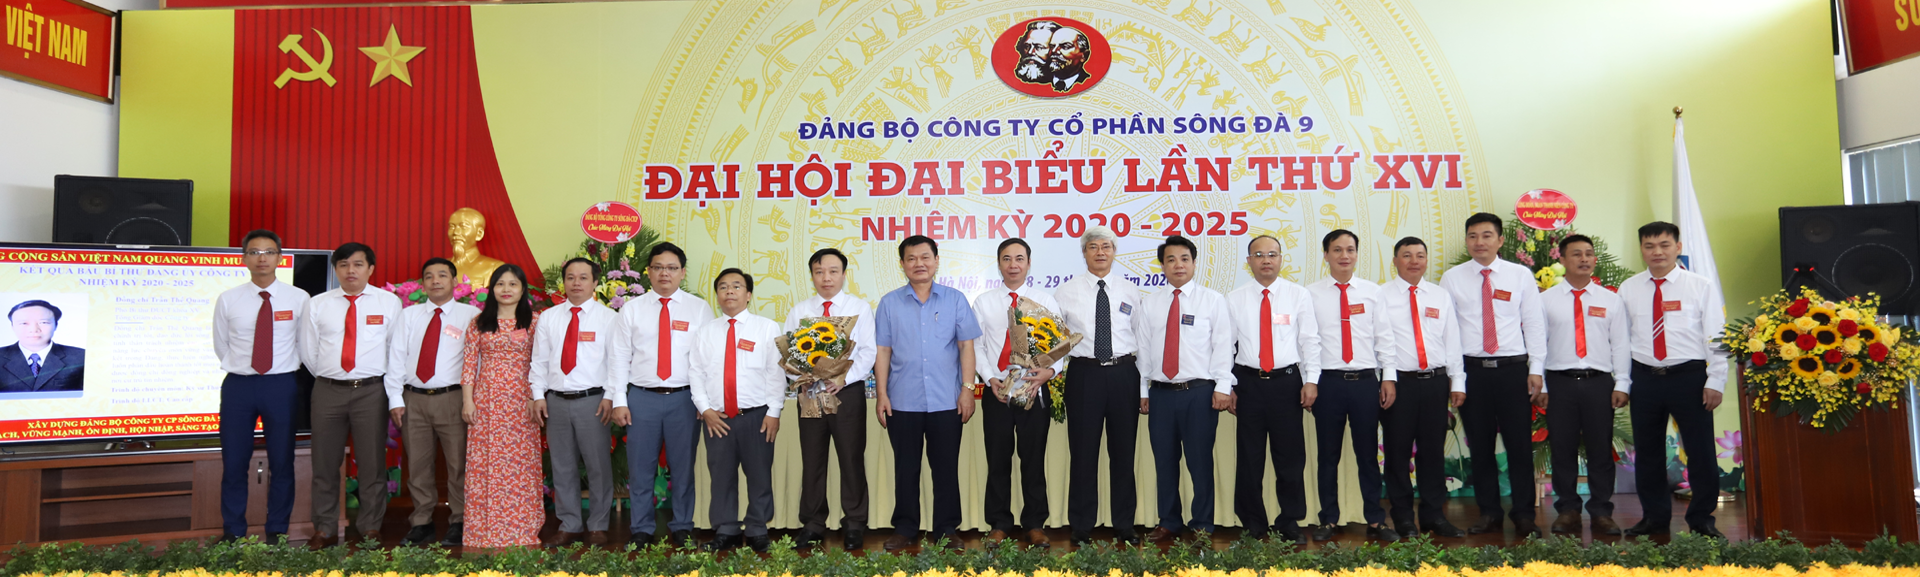 Đại hội Đại biểu Đảng bộ Công ty CP Sông Đà 9 khóa XVI, nhiệm kỳ 2020-2025